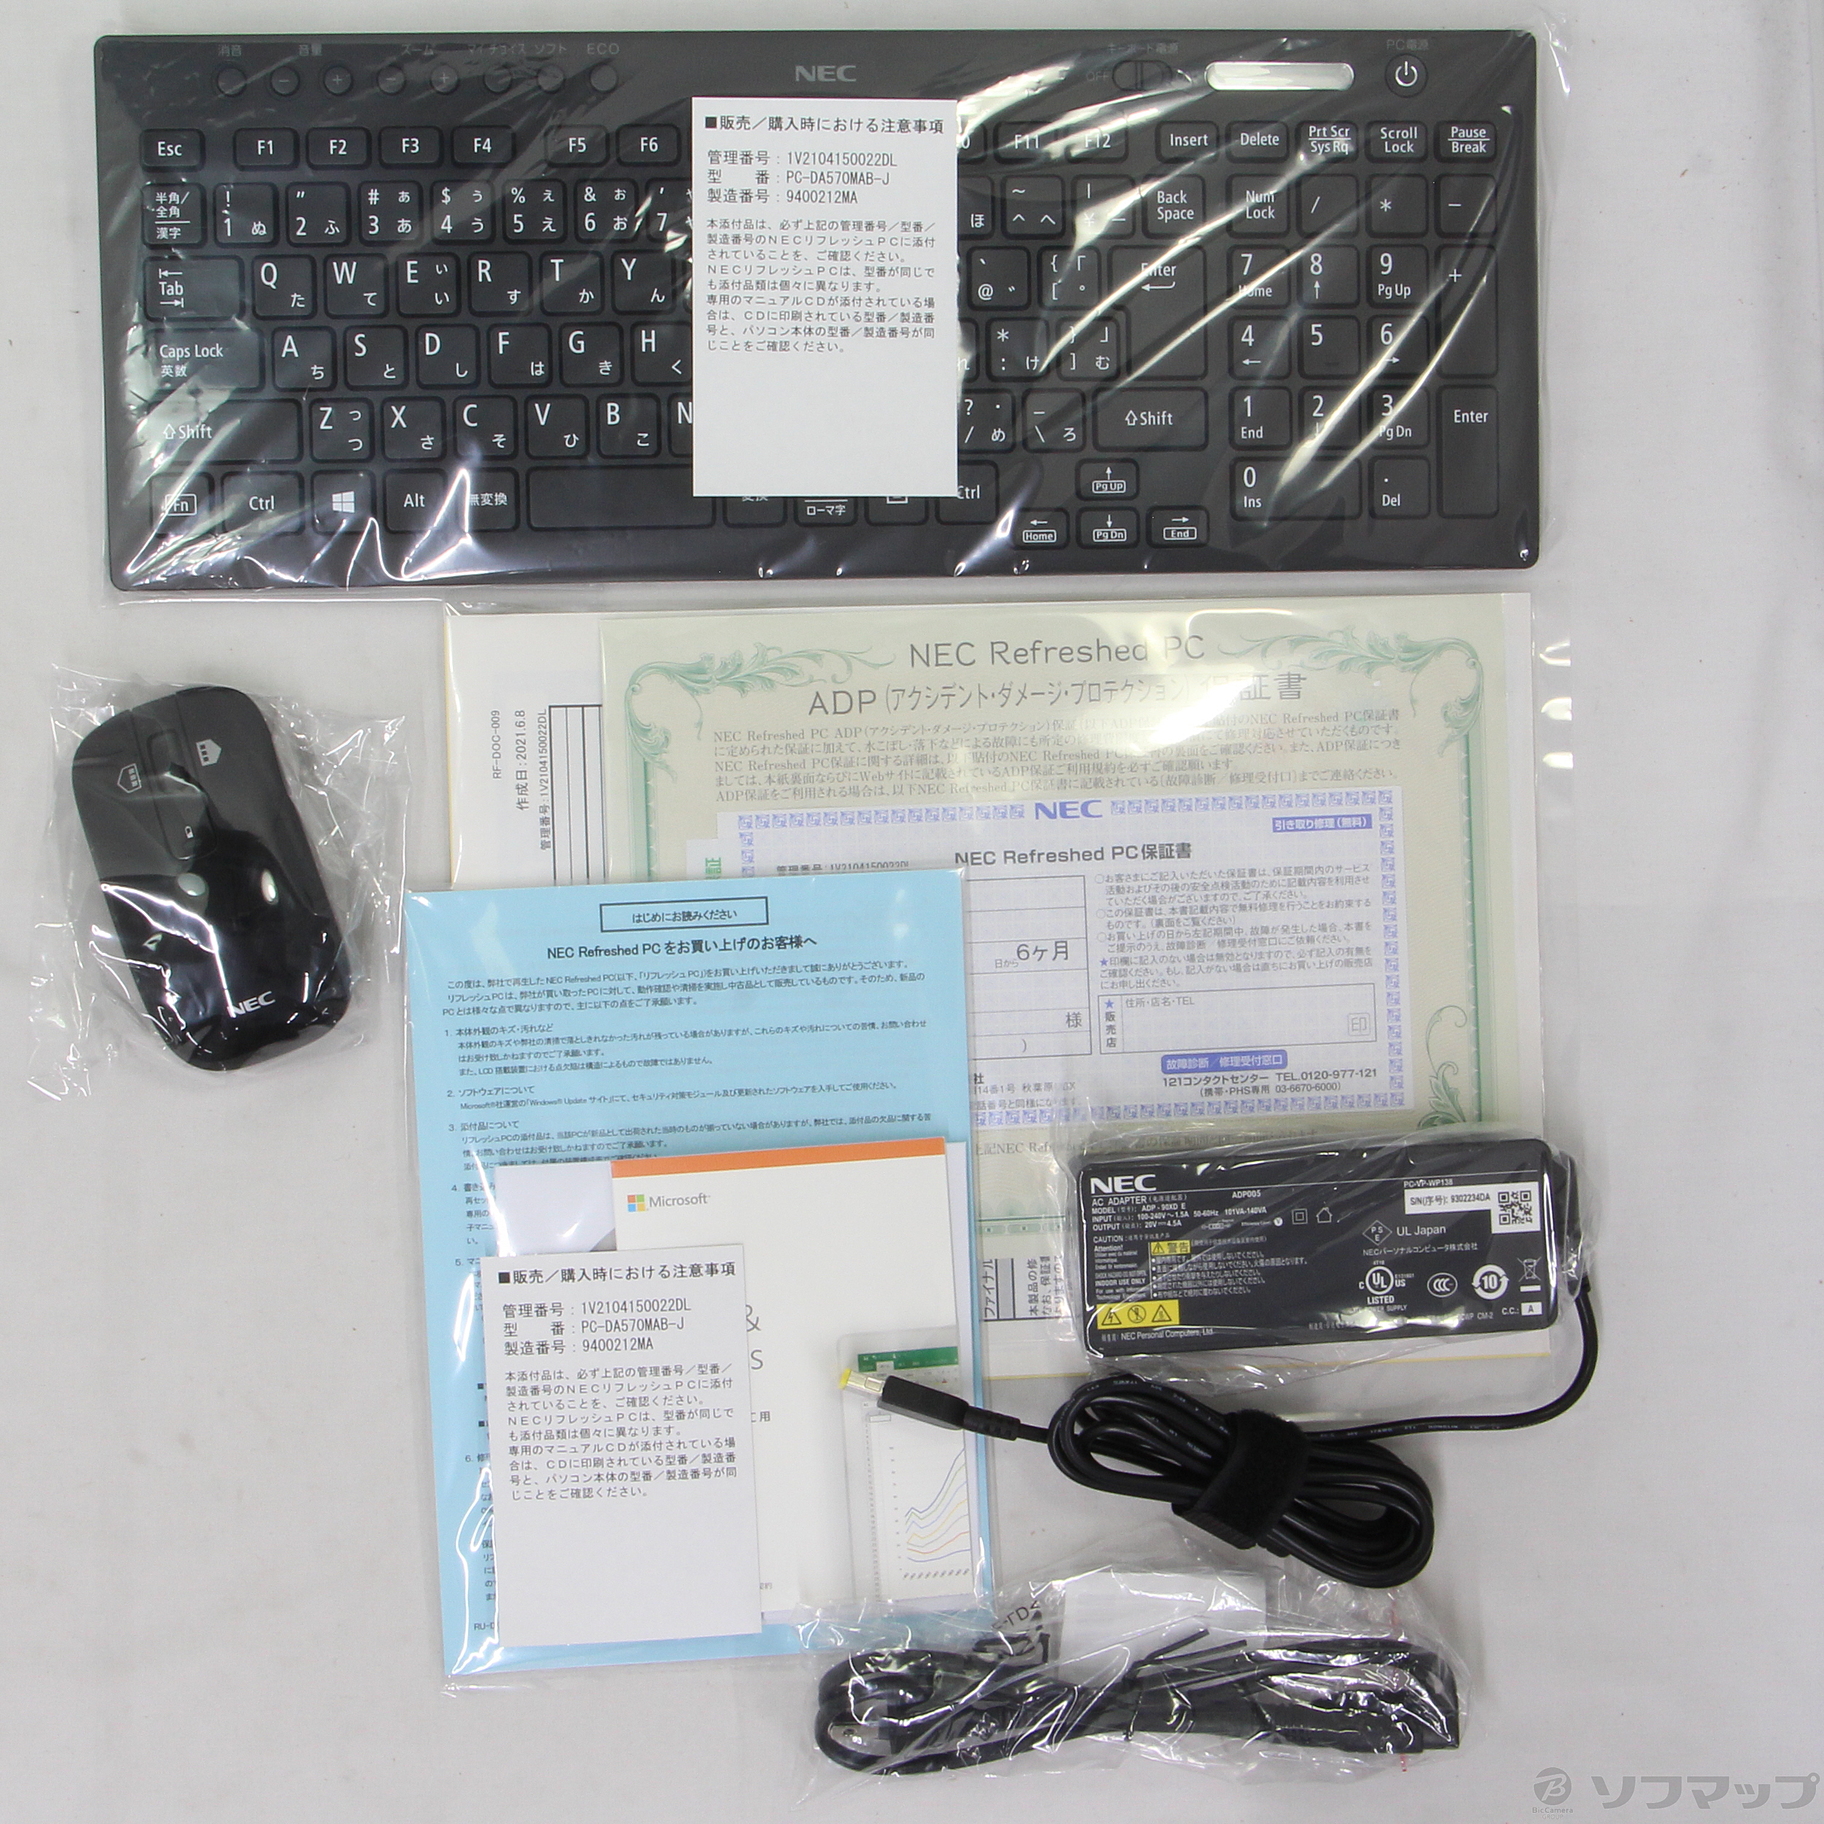 セール対象品 LAVIE Desk All-in-one PC-DA570MAB-J ファインブラック 〔NEC Refreshed PC〕  〔Windows 10〕 ≪メーカー保証あり≫